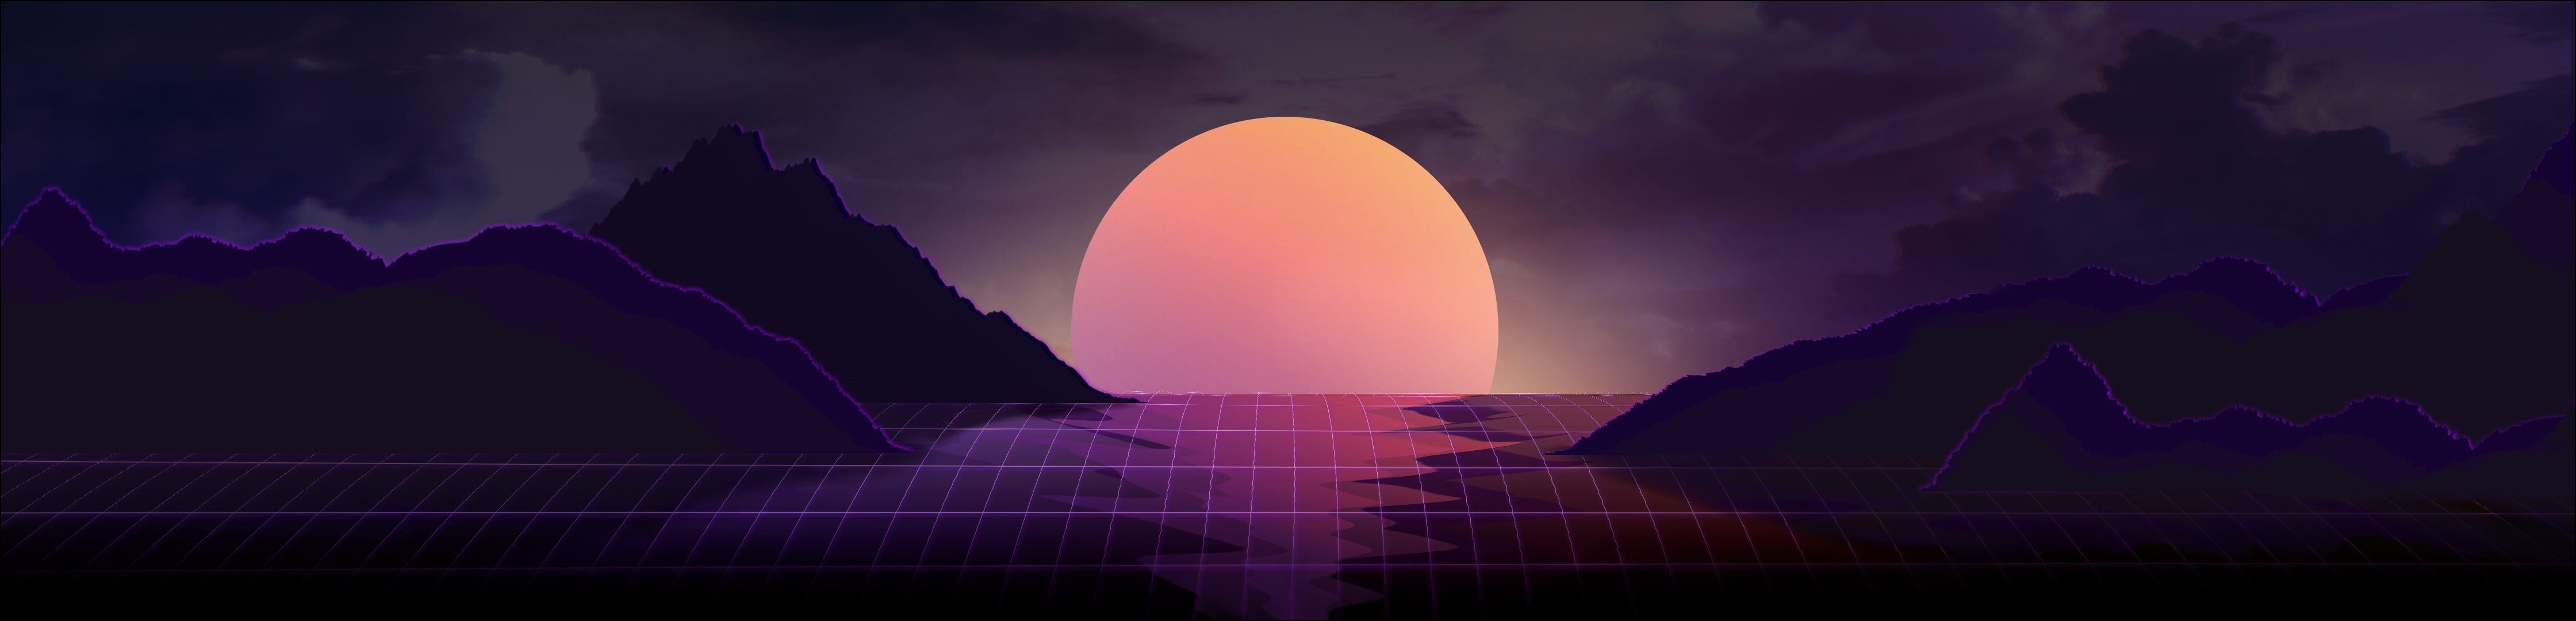 Vaporwave sunset V2 [4480x1080] [+PSD]